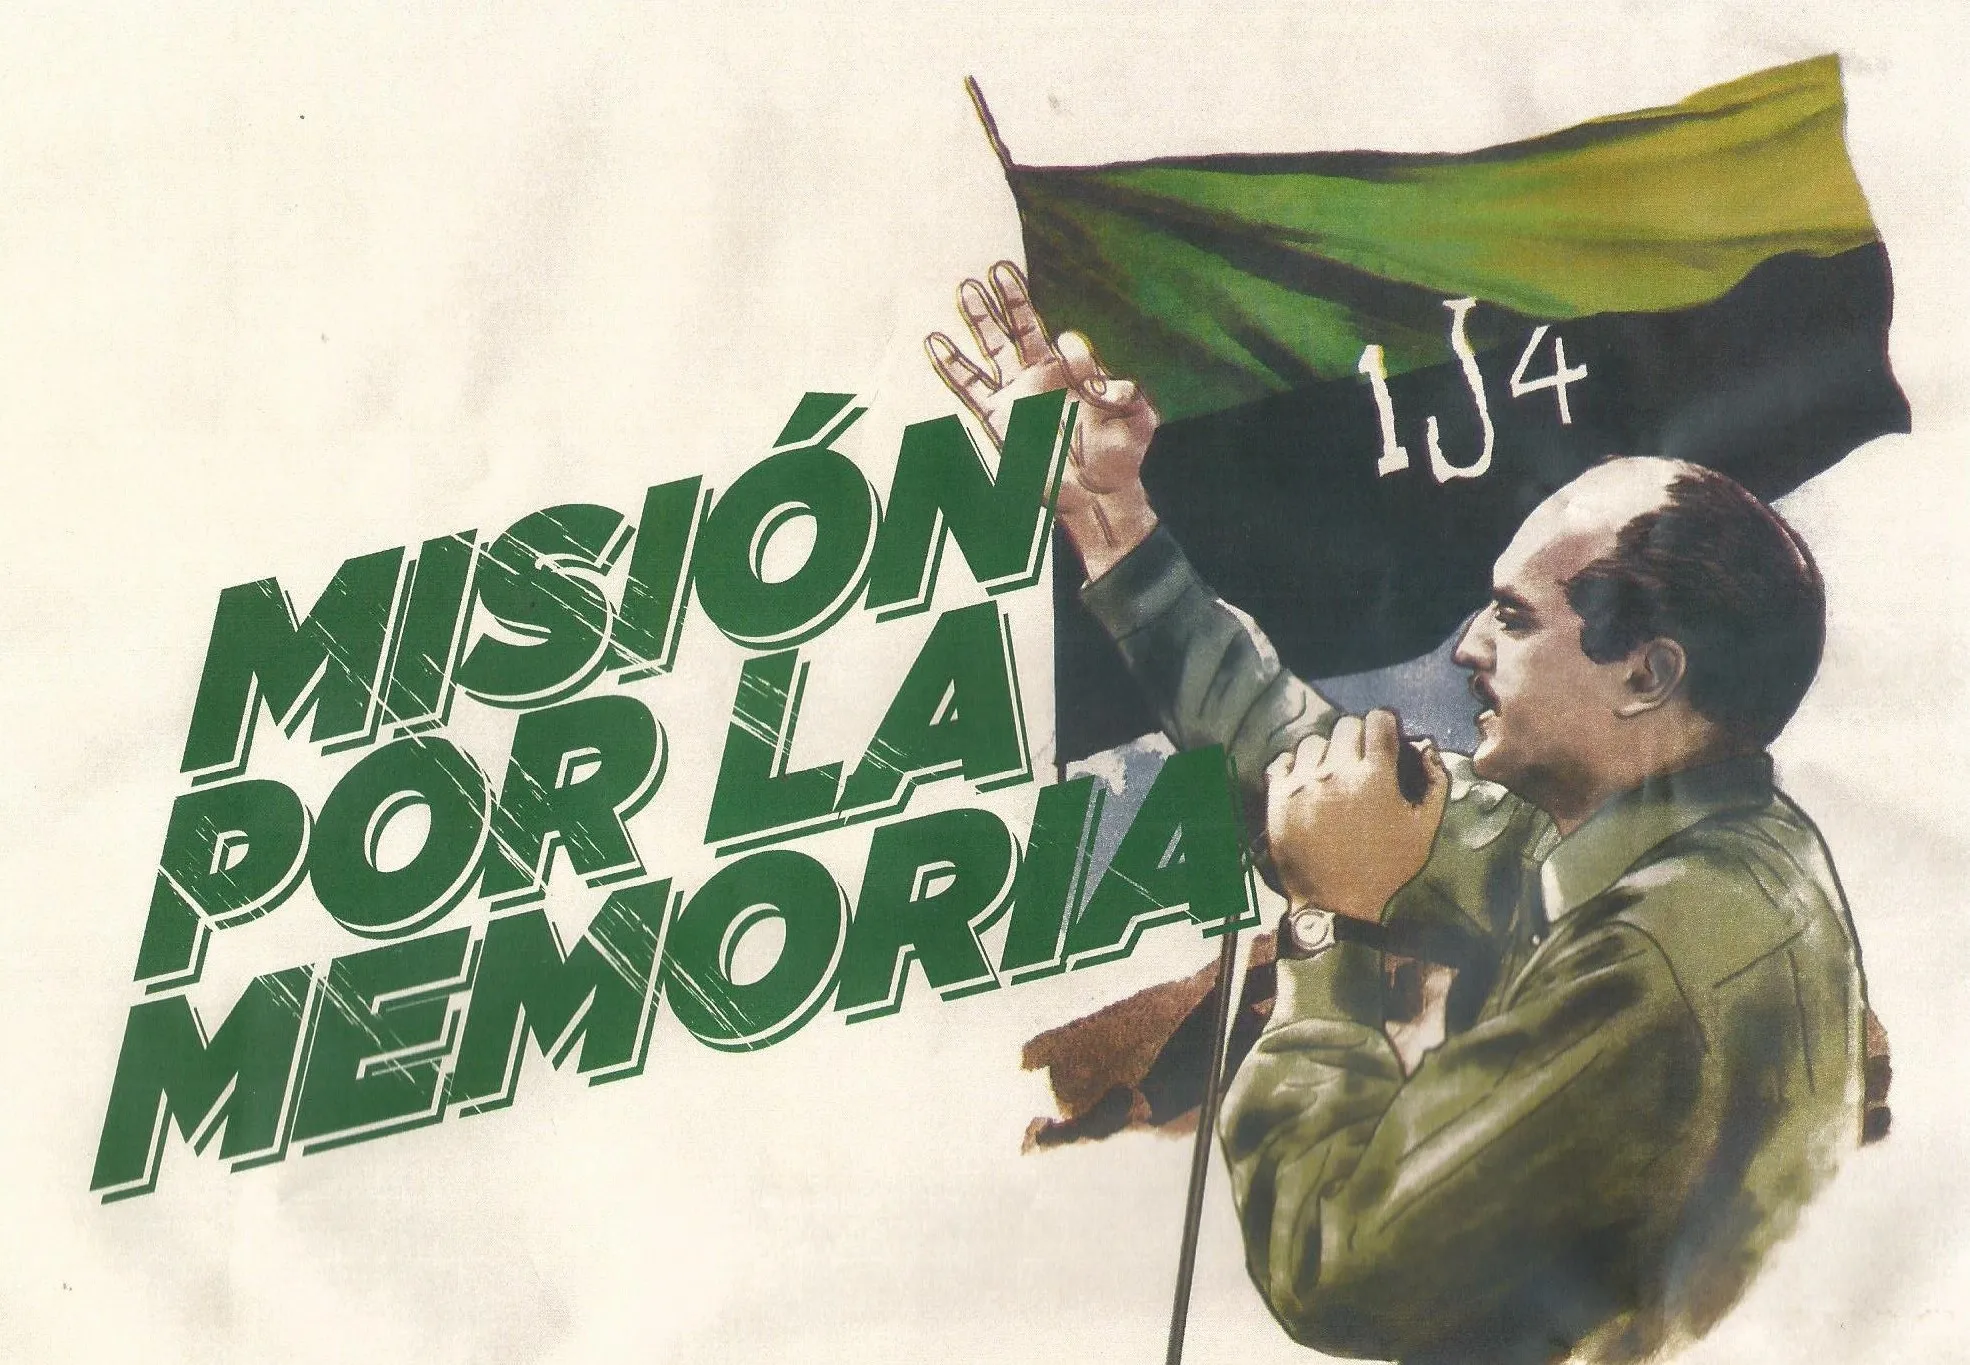 En recordación y homenaje al 59 aniversario del alzamiento armado del 1J4 (1)